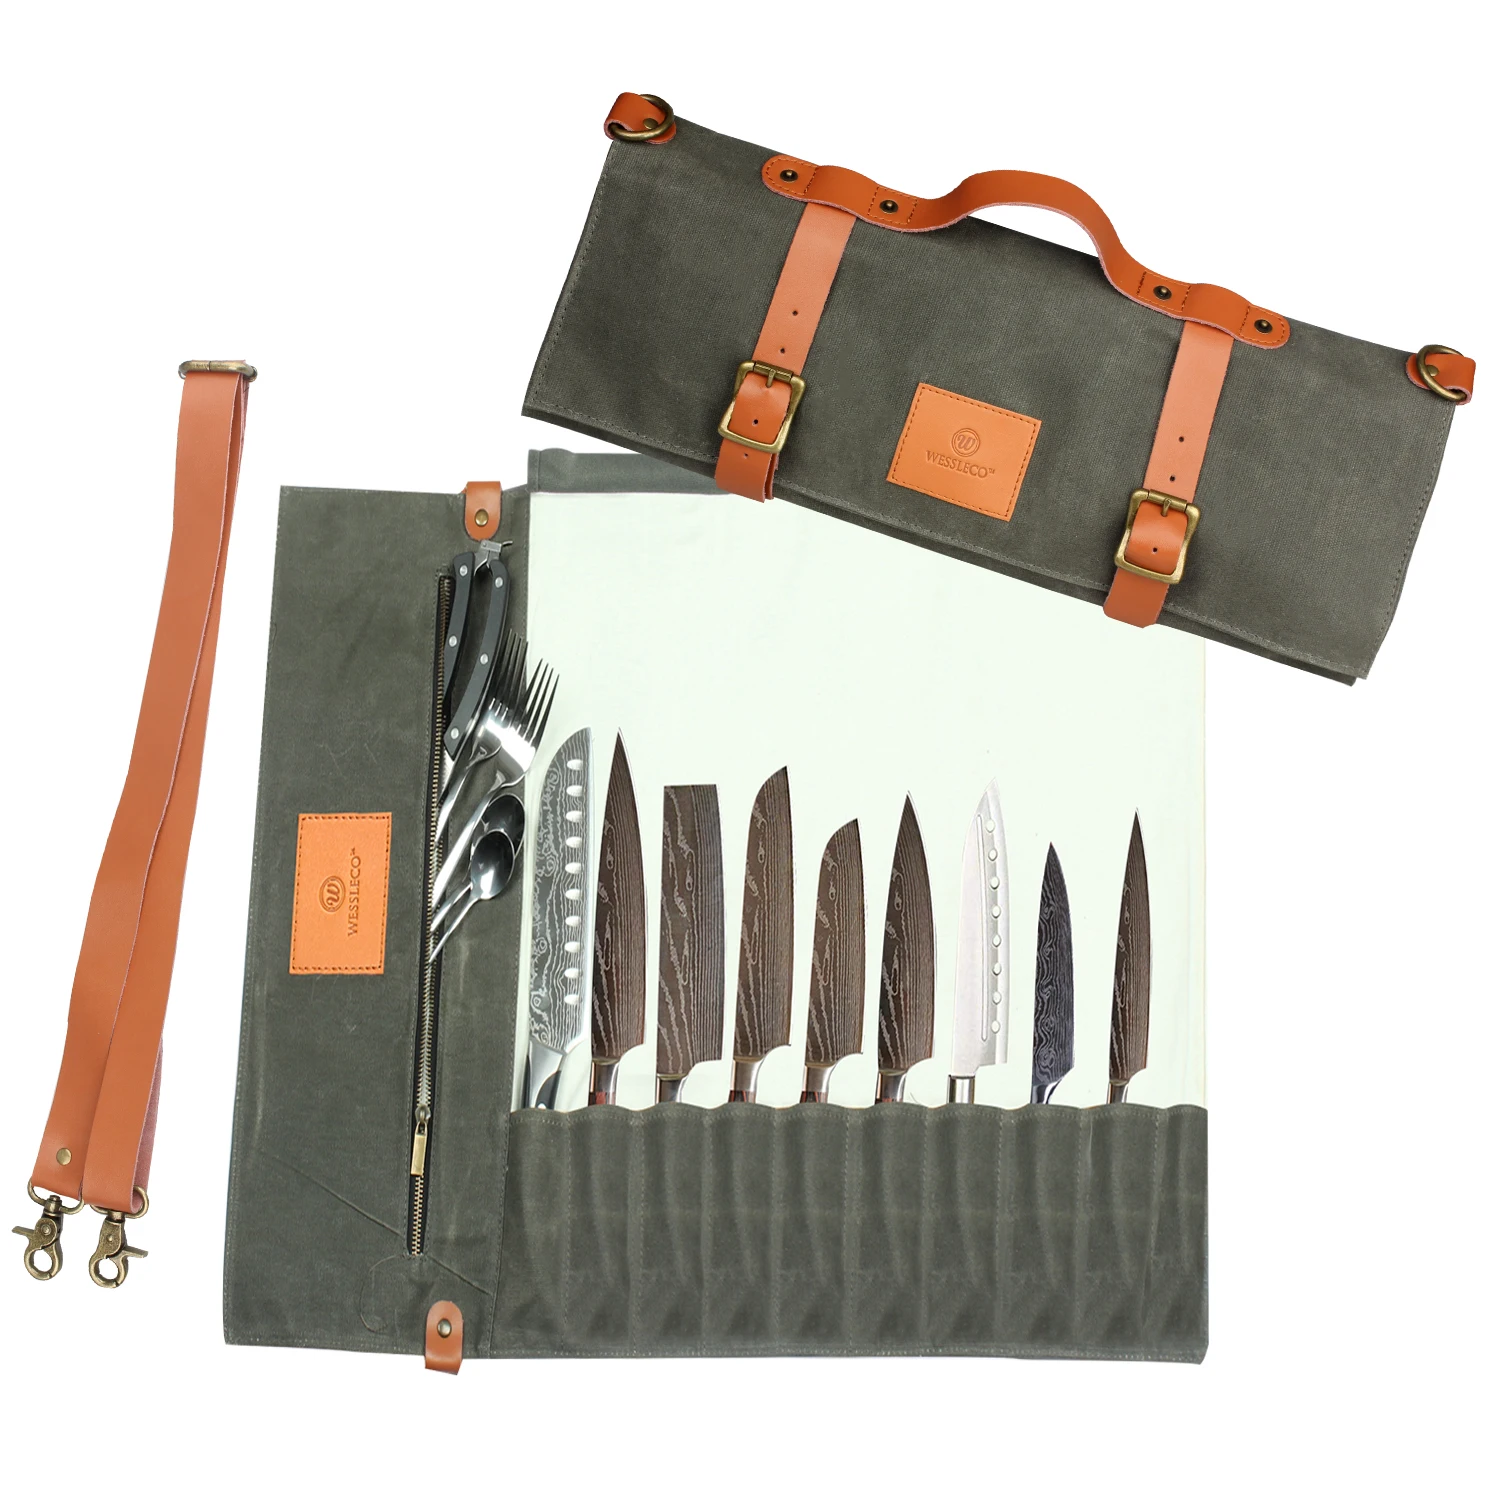 Rollo de cuchillos, bolsa de cuchillos resistente, estuche de cuchillos de  lona encerada con 4 ranuras para cuchillos y herramientas de cocina, bolsa